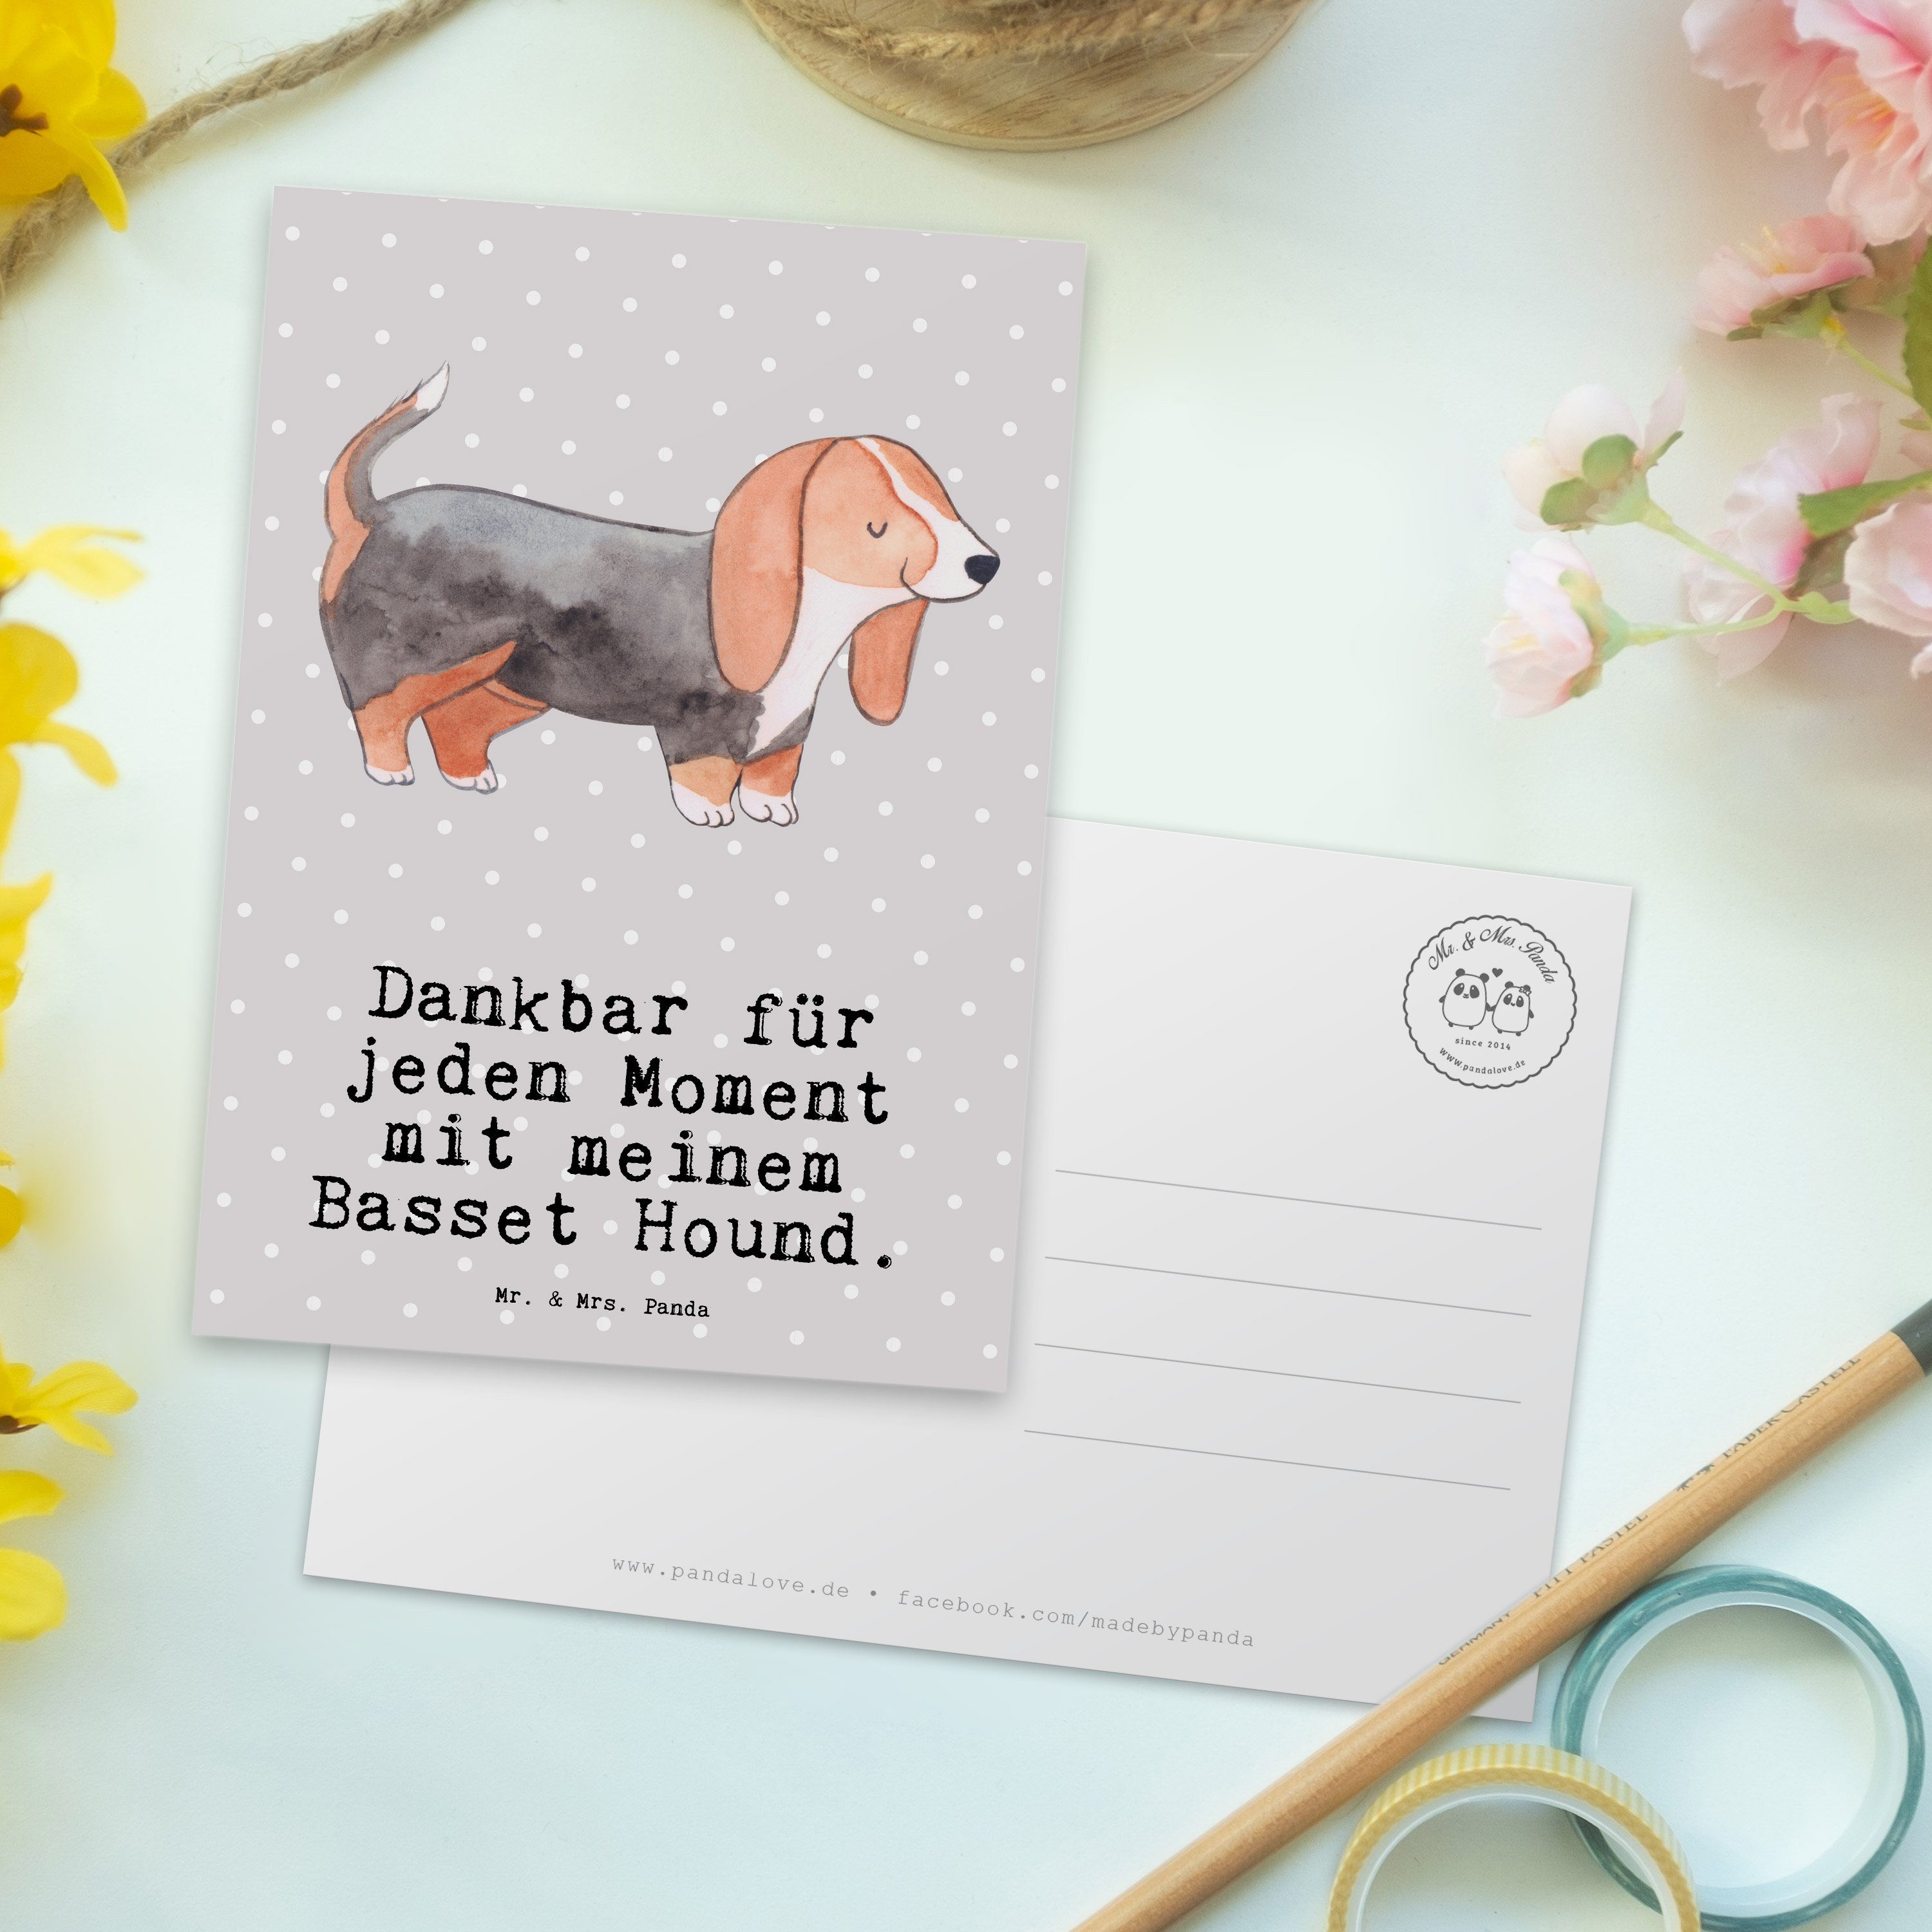 Hound & - Pastell - Mr. Panda Basset Geschenk, Einladu Grau Moment Postkarte Ansichtskarte, Mrs.